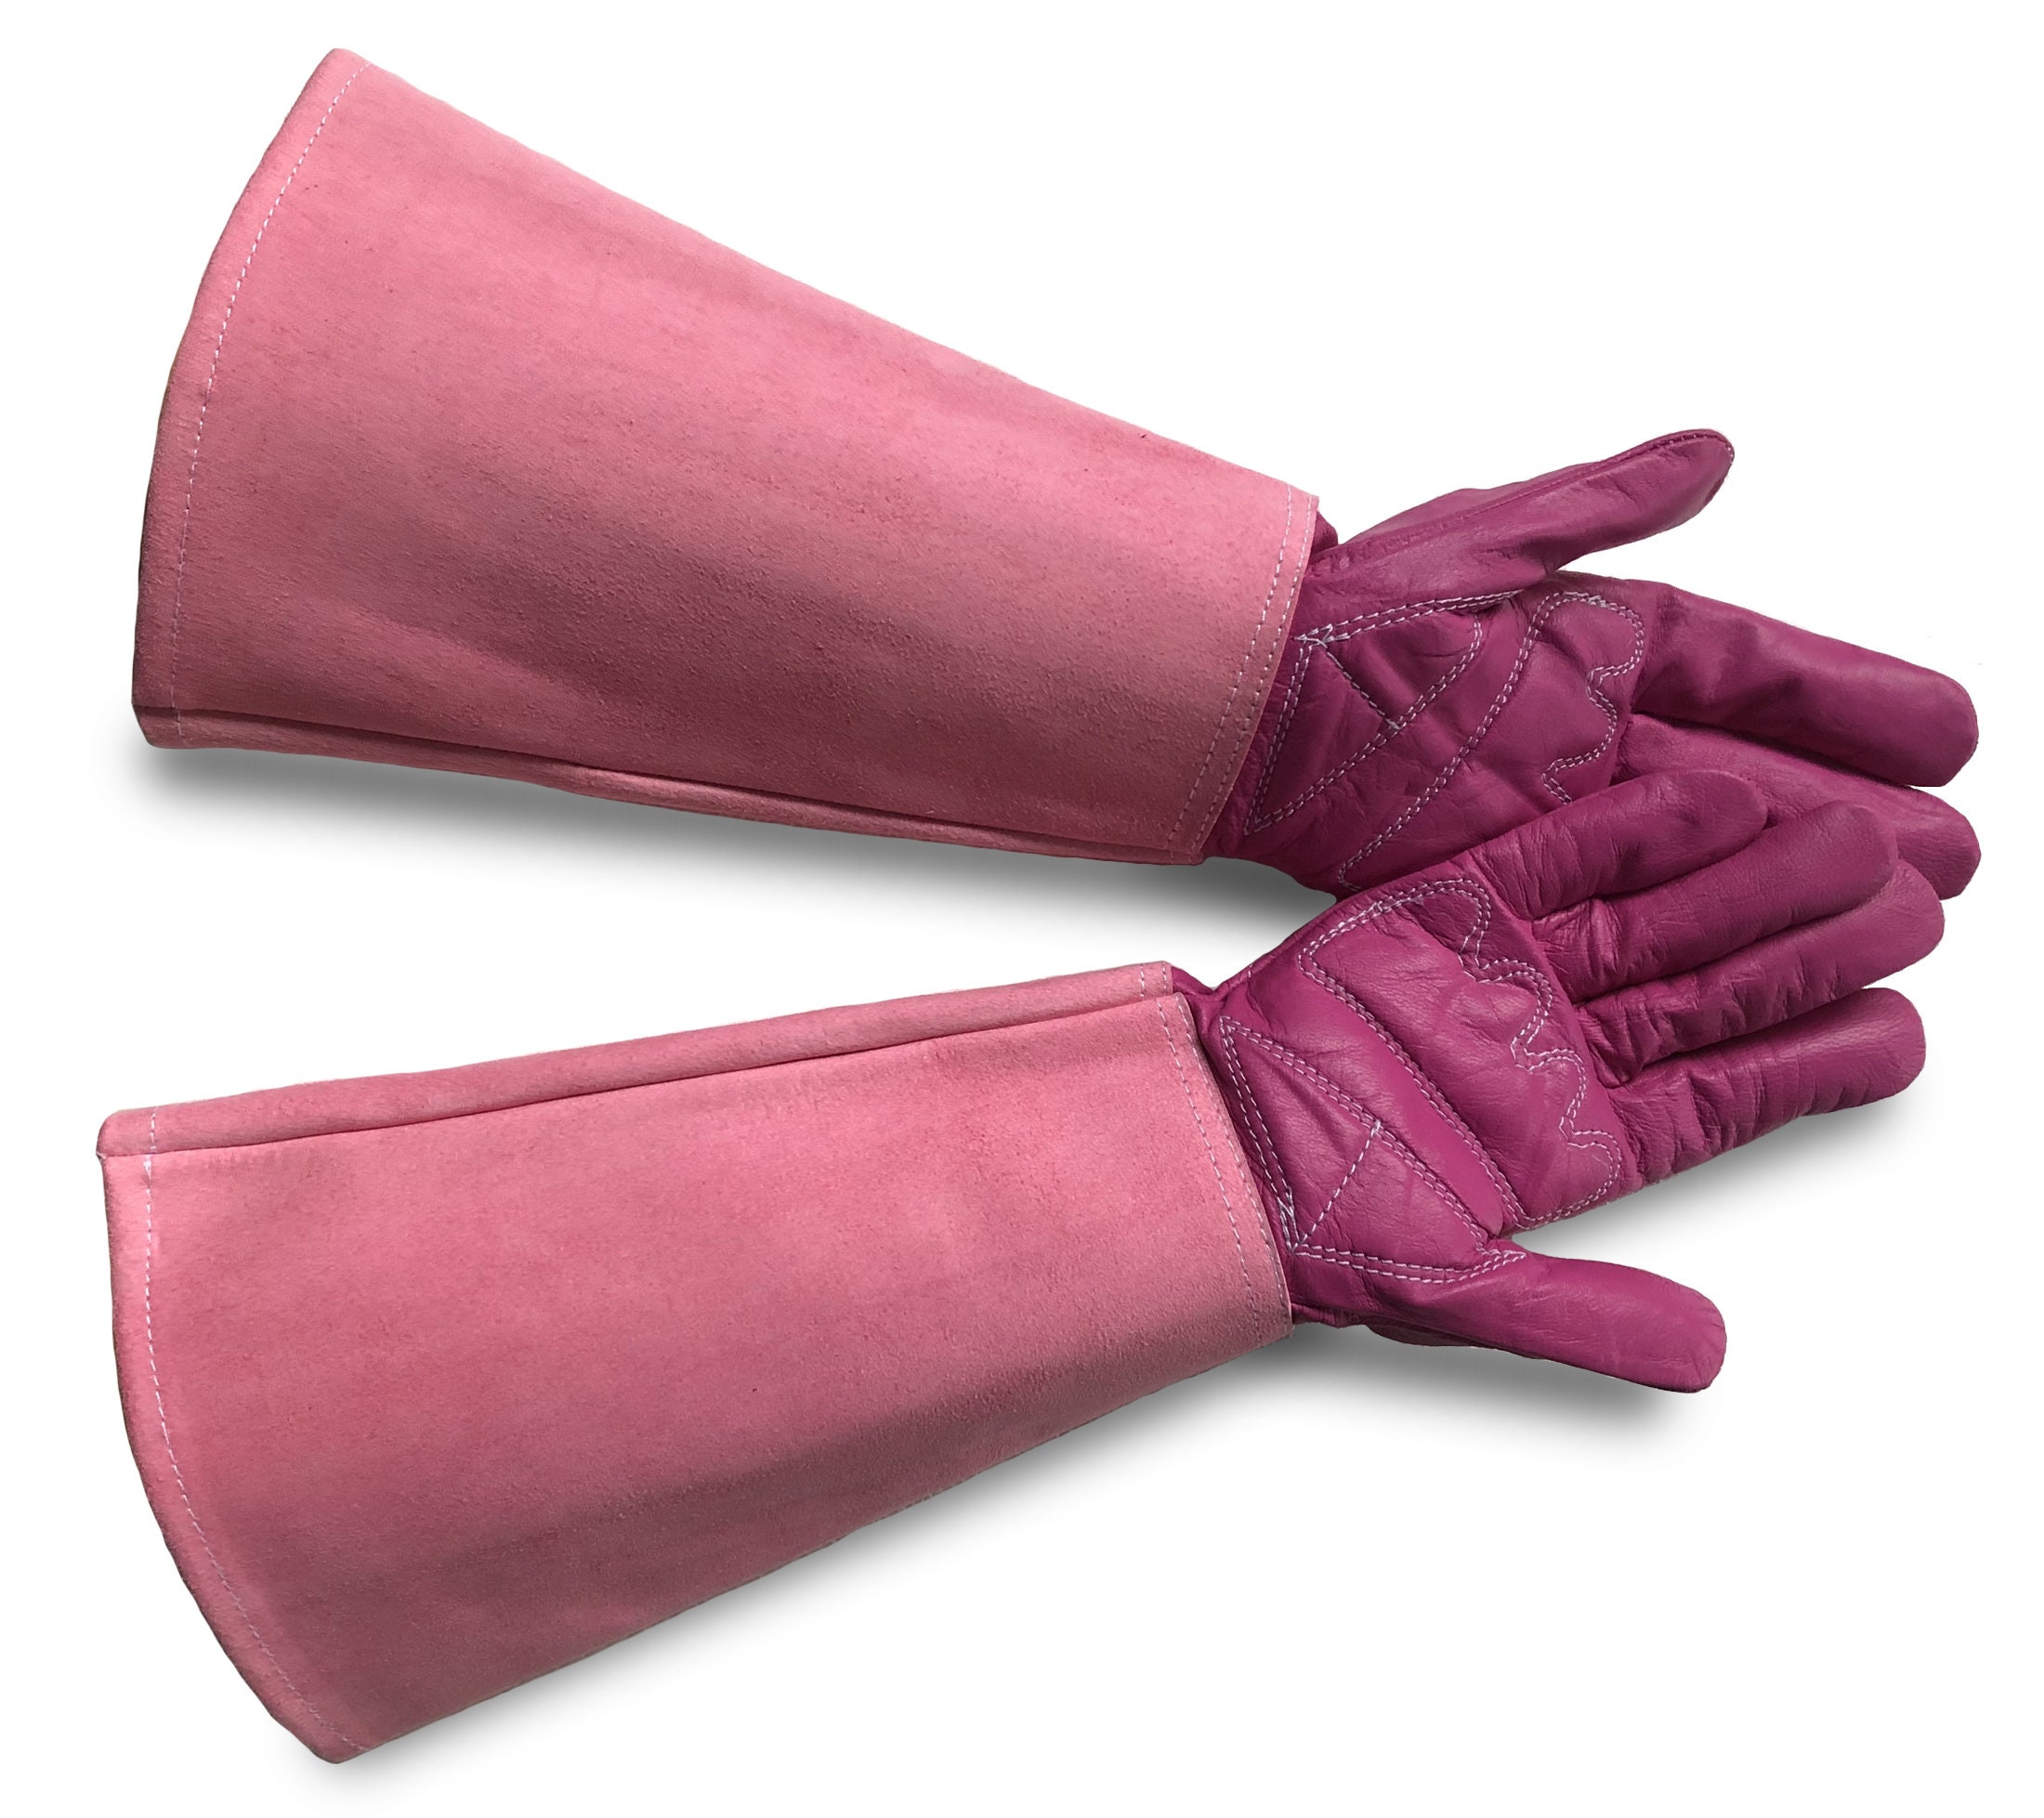 Gants de jardinage rose de longueur de coude, gants de jardin de dames de  modèle de gant, cadeaux de fête des mères, cadeaux pour des femmes, cadeau  unique de jardinage 